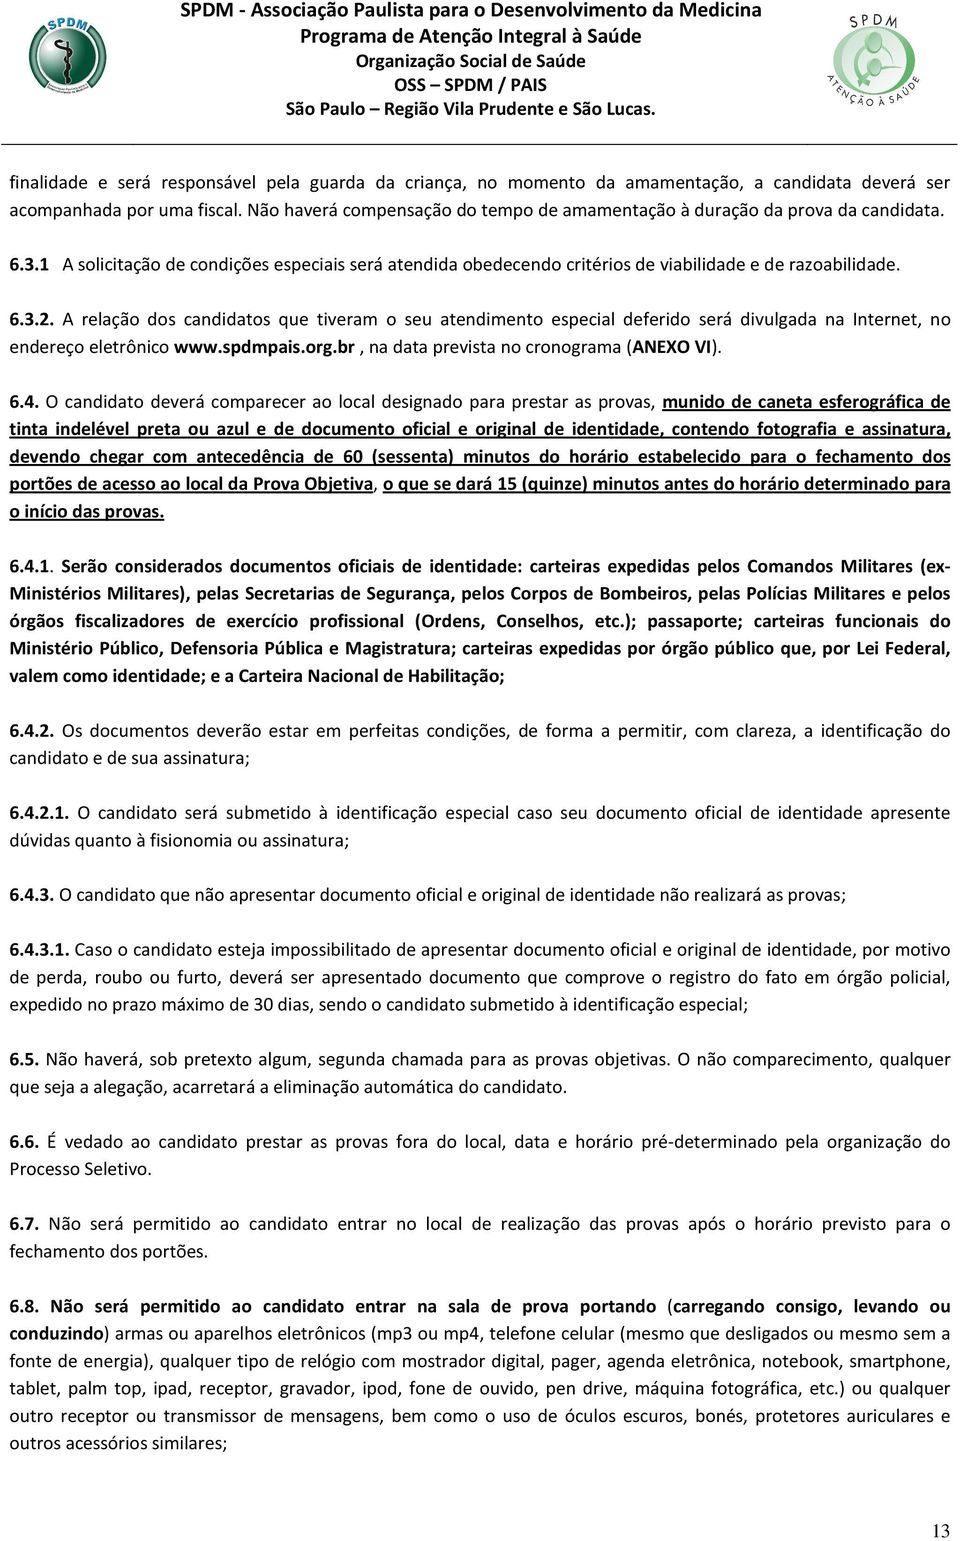 A relação dos candidatos que tiveram o seu atendimento especial deferido será divulgada na Internet, no endereço eletrônico www.spdmpais.org.br, na data prevista no cronograma (ANEXO VI). 6.4.